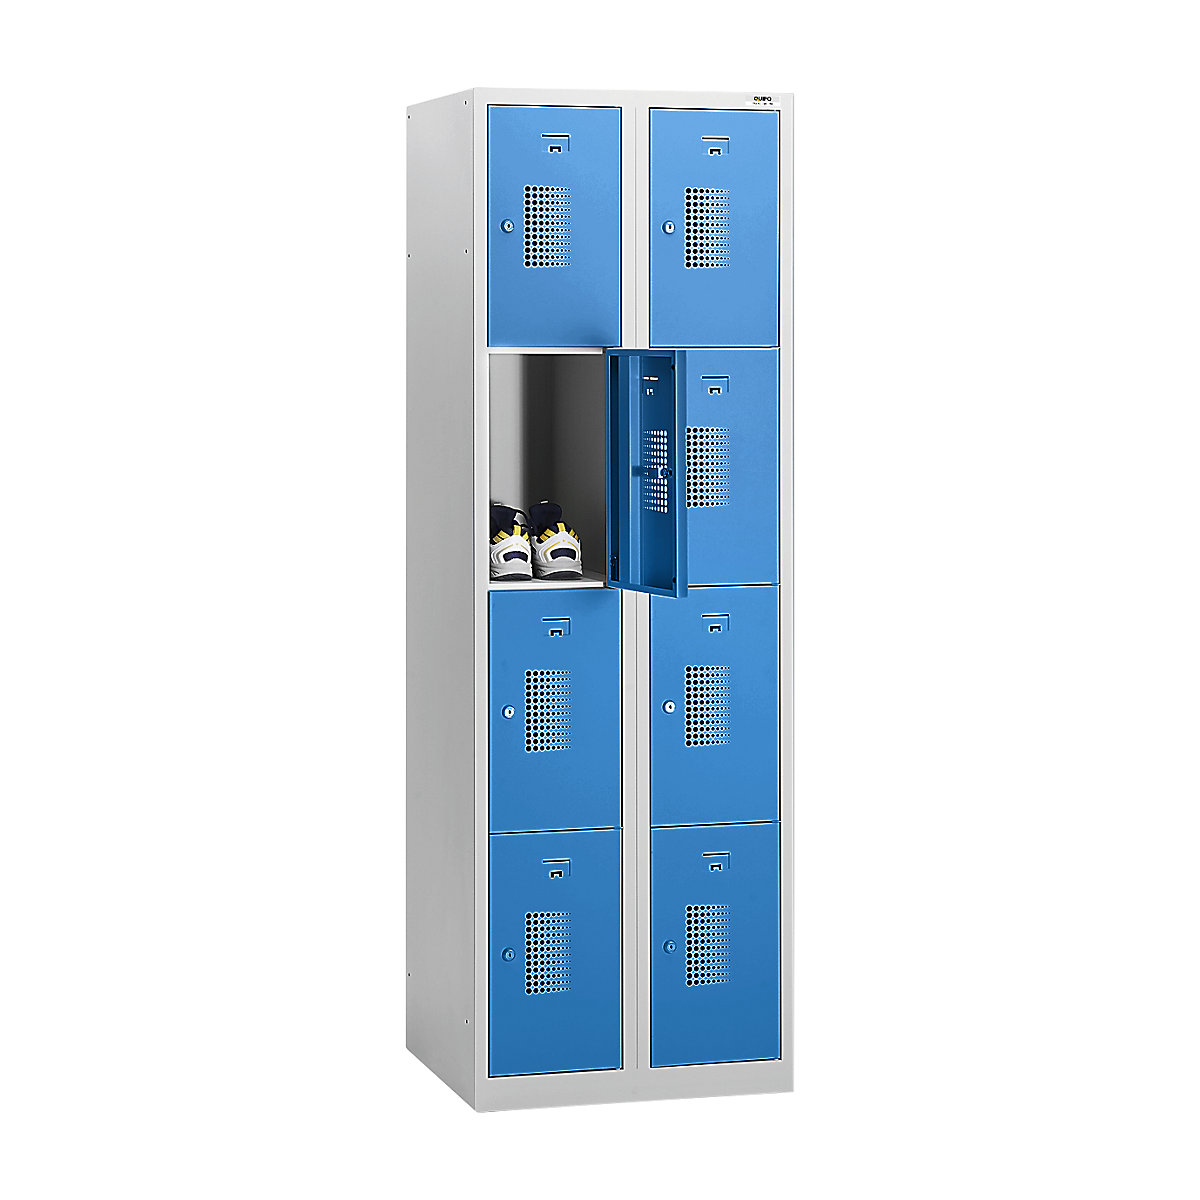 Omara s predelki z zaklepanjem AMSTERDAM – eurokraft basic, 2 razdelka, širina 800 mm, 8 predelkov, cilindrična ključavnica, korpus svetlo siv, vrata svetlo modra-27